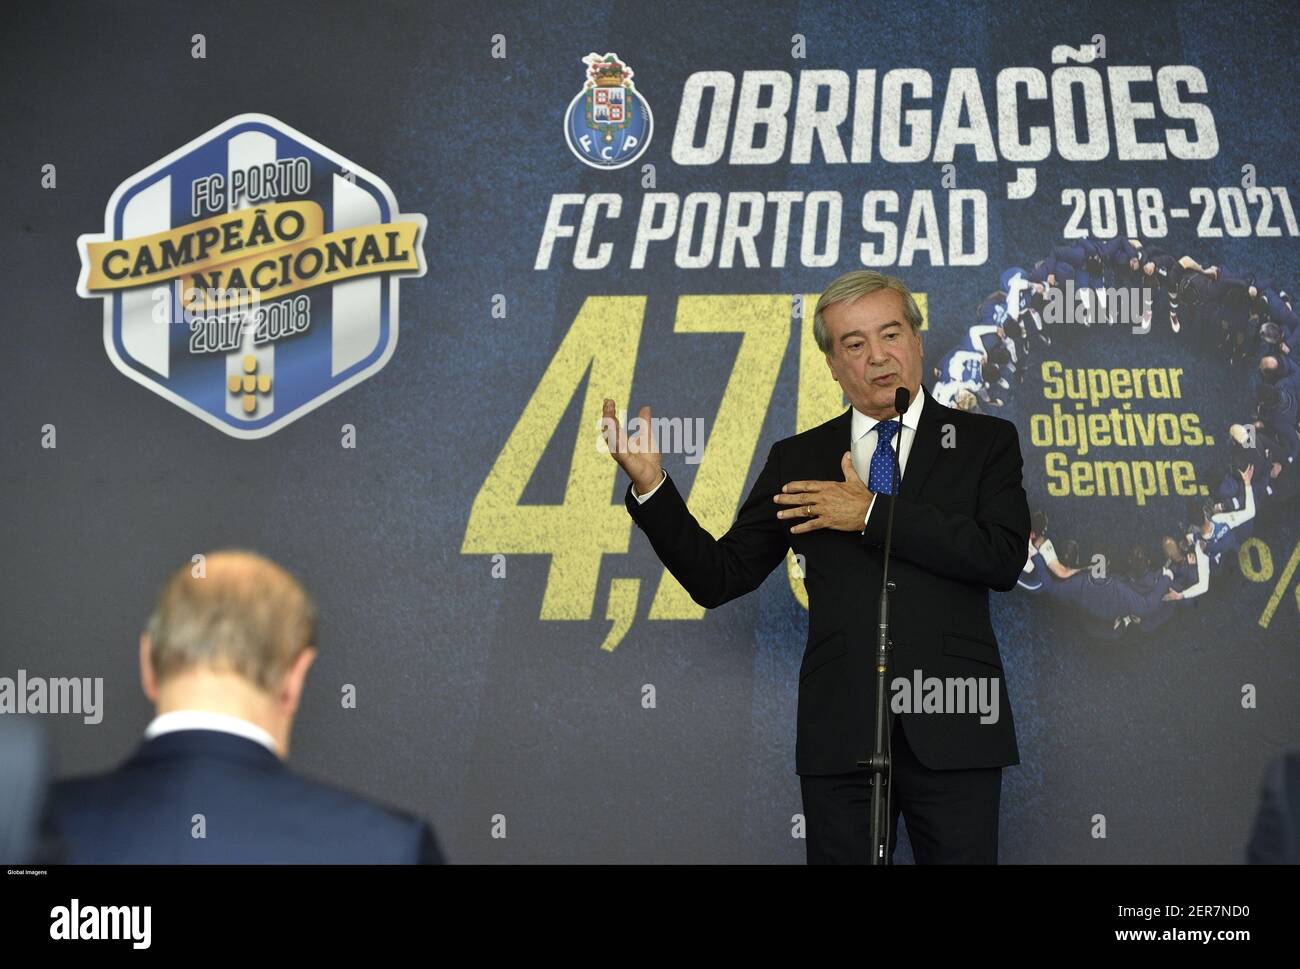 Porto,14/05/2018- Decorreu esta manhã, na tribuna Vip do EstÃ¡dio do  Dragão, conferÃªncia de imprensa de apresentação de empréstimo  obrigacionista da SAD do FC Porto, com a presença de Fernando Gomes e de